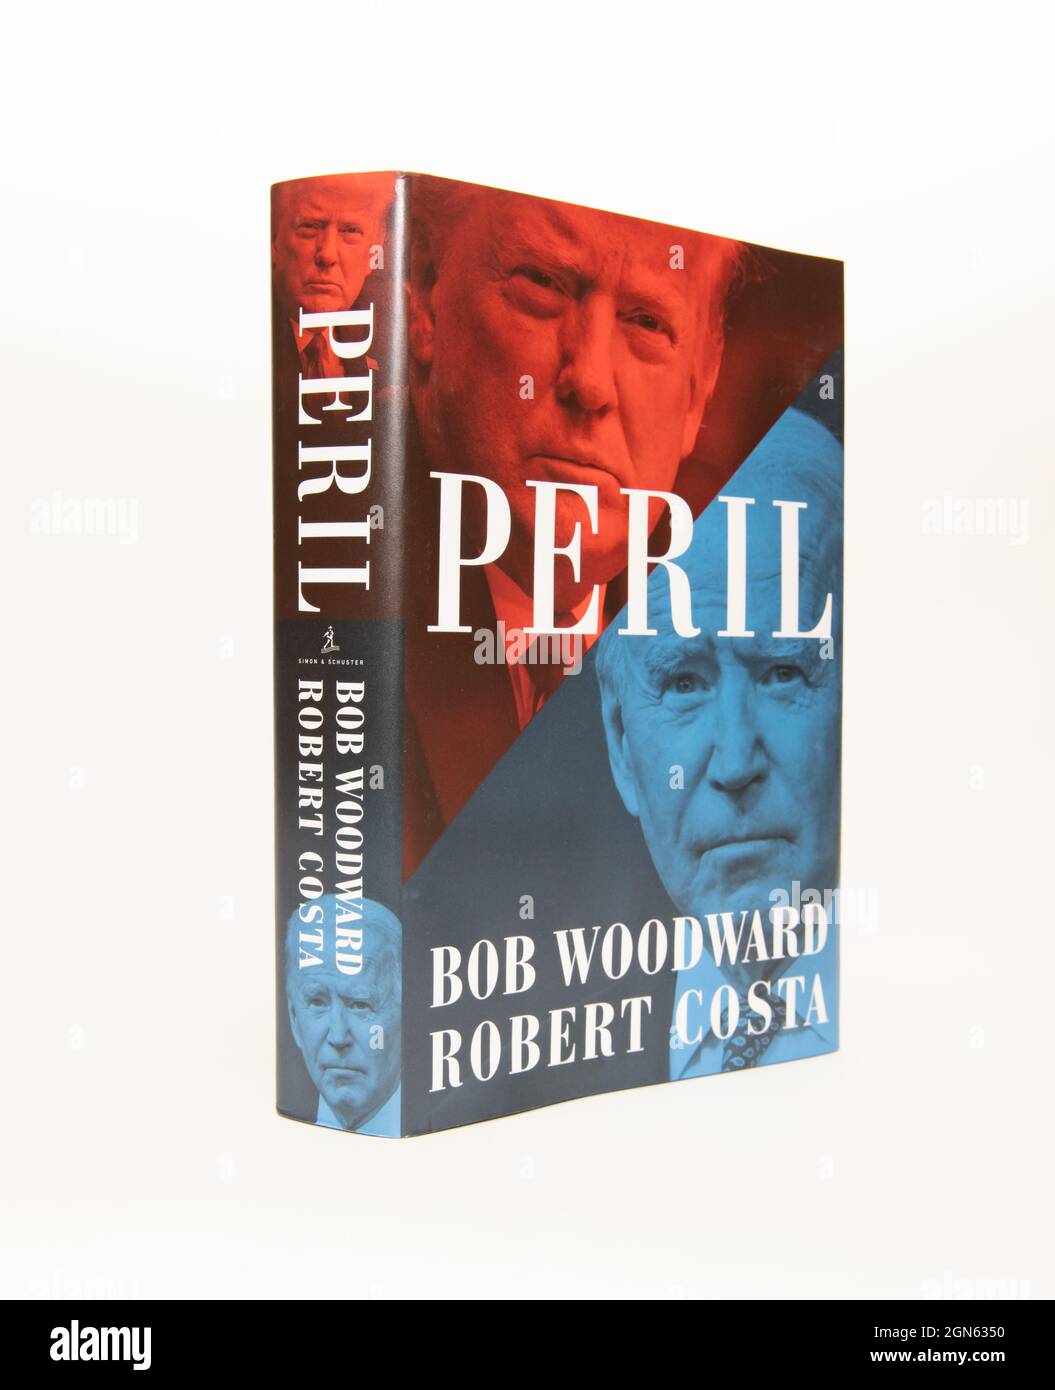 Peril, un libro di Bob Woodward e Robert Costa, sulle elezioni americane del 2020 e sulla transizione dalla presidenza Trump alla presidenza Biden. Foto Stock